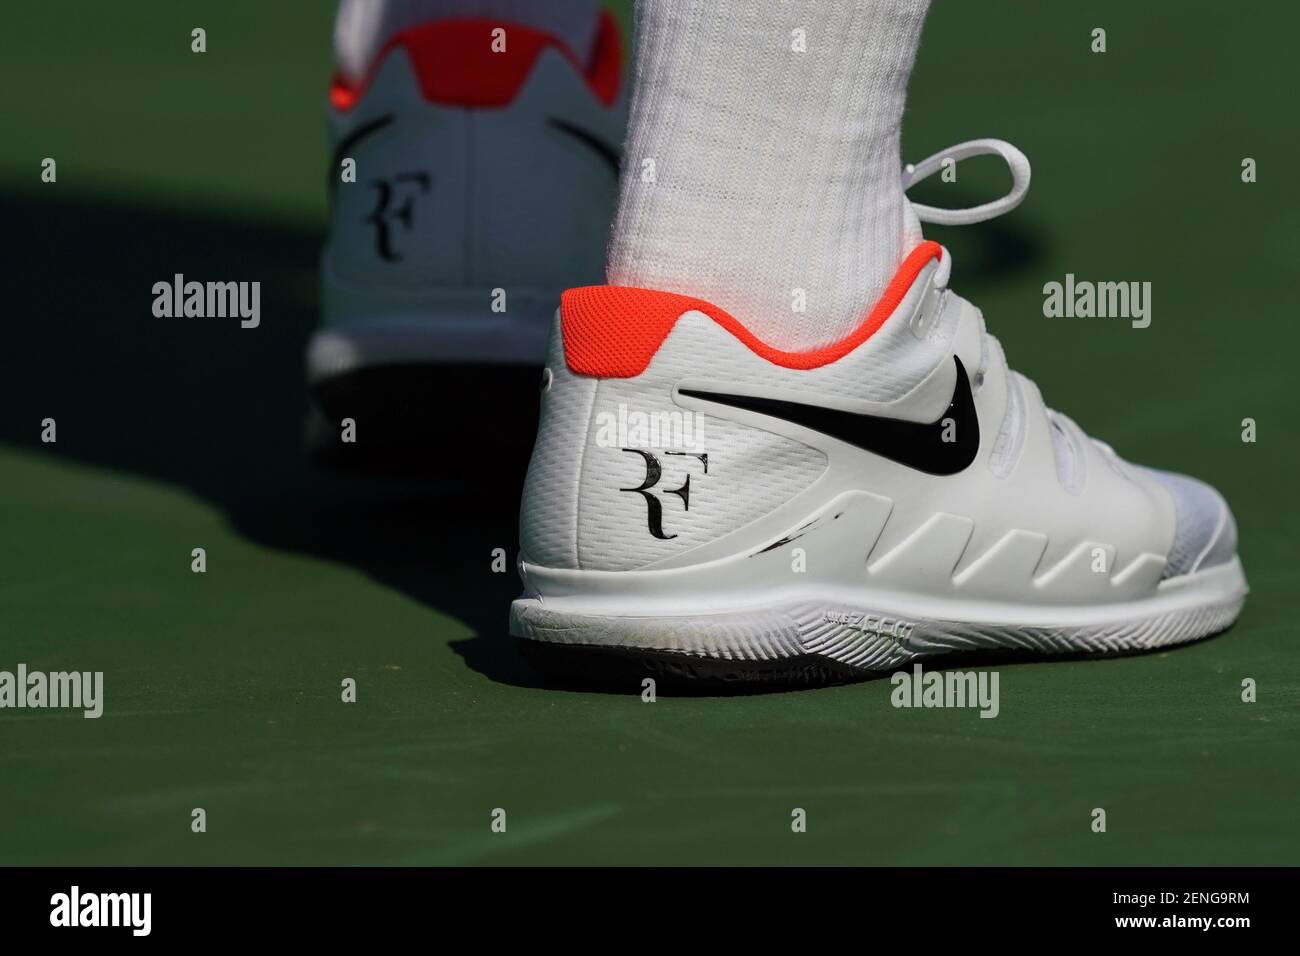 15 de agosto de 2019; Mason, OH, EE.UU.; Una vista del logotipo de RF en  las zapatillas Nike vapor X usadas por Roger Federer (sui) mientras se  prepara para servir contra Andrey